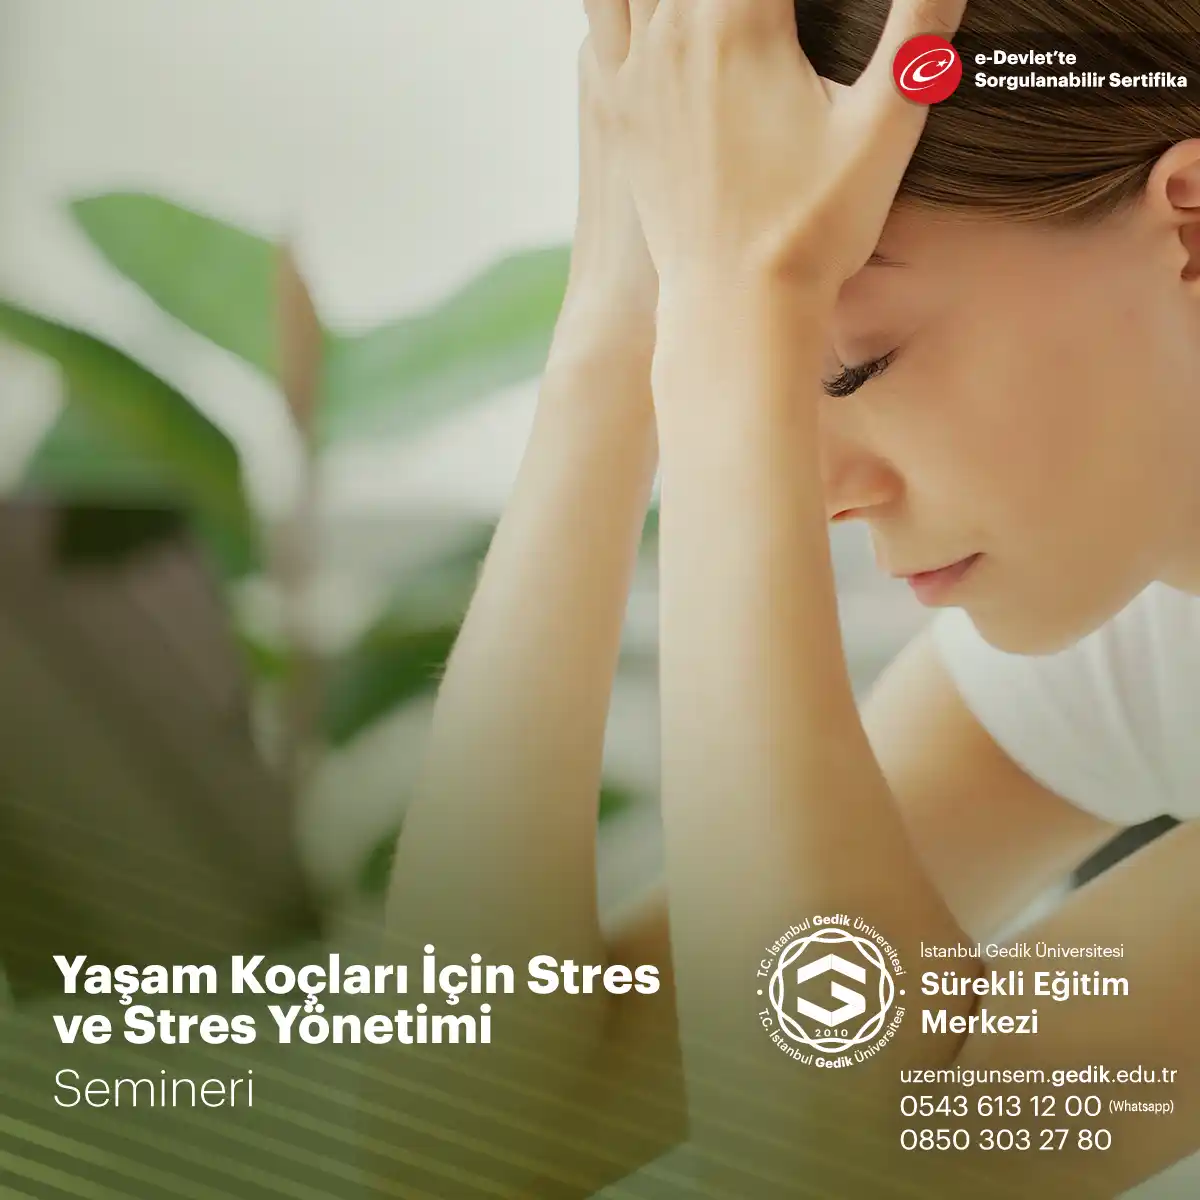 Stres, modern yaşamın kaçınılmaz bir parçasıdır ve kişilerin fiziksel, zihinsel ve duygusal sağlığını olumsuz etkileyebilir.